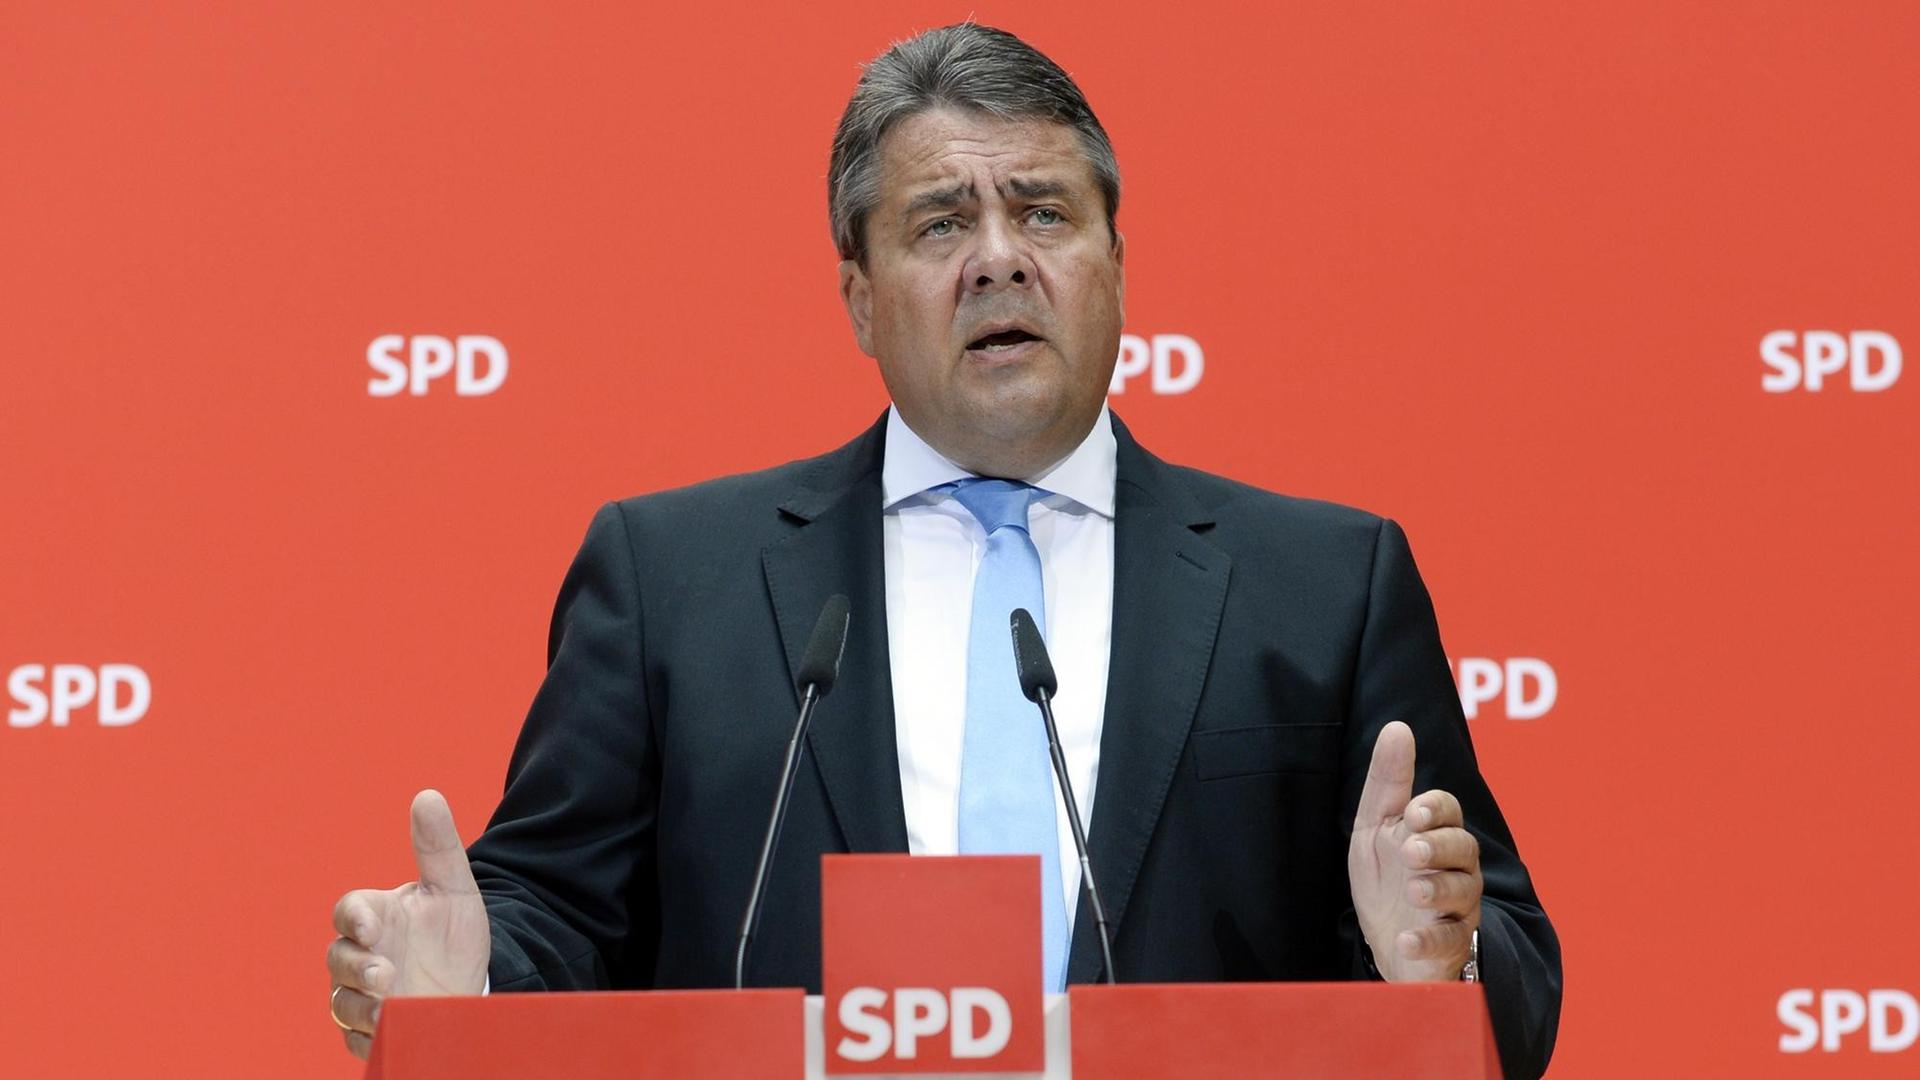 SPD-Vorsitzender und Bundeswirtschaftminister Sigmar Gabriel spricht am 05.06.2016 in Berlin während einer Pressekonferenz nach einem Parteikonvent.